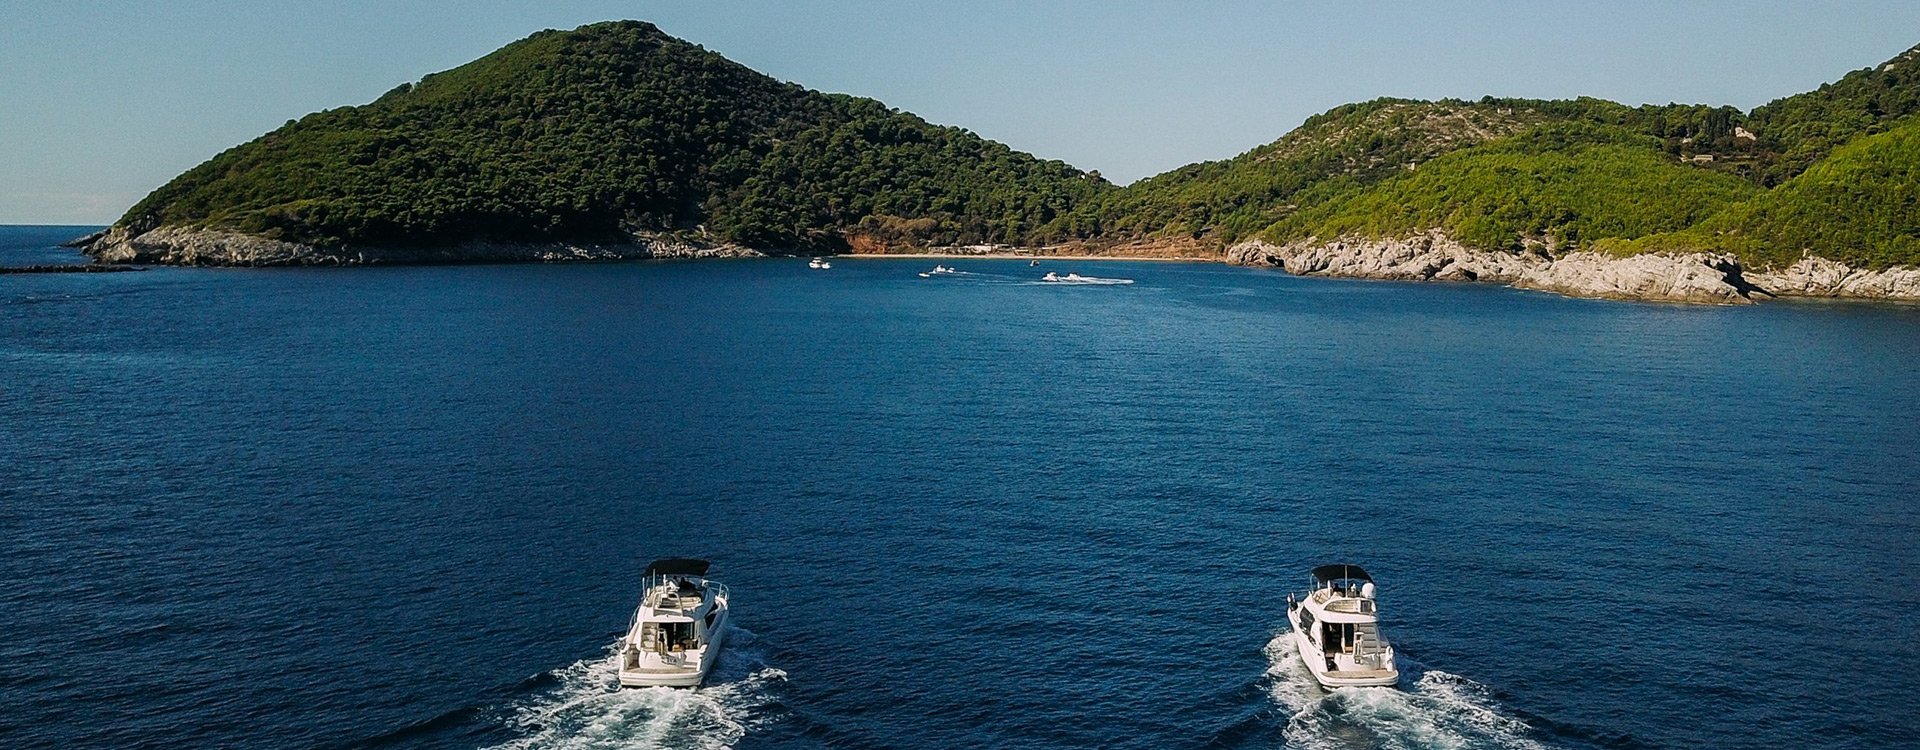 Dubrovnik_Elafit Islands